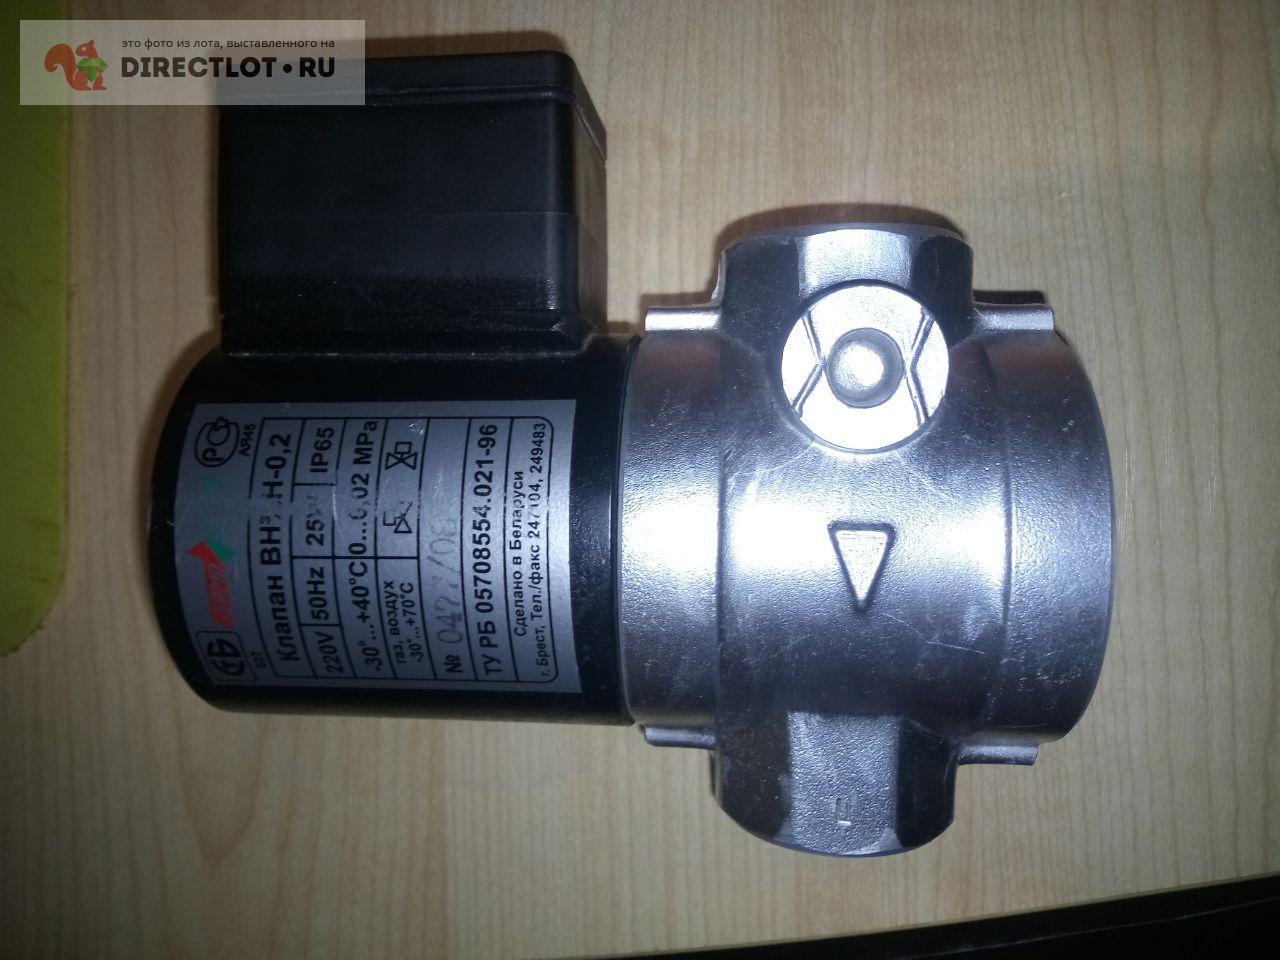 Клапан электромагнитный газовый ВН3/4Н-0.2  на DIRECTLOT.RU .